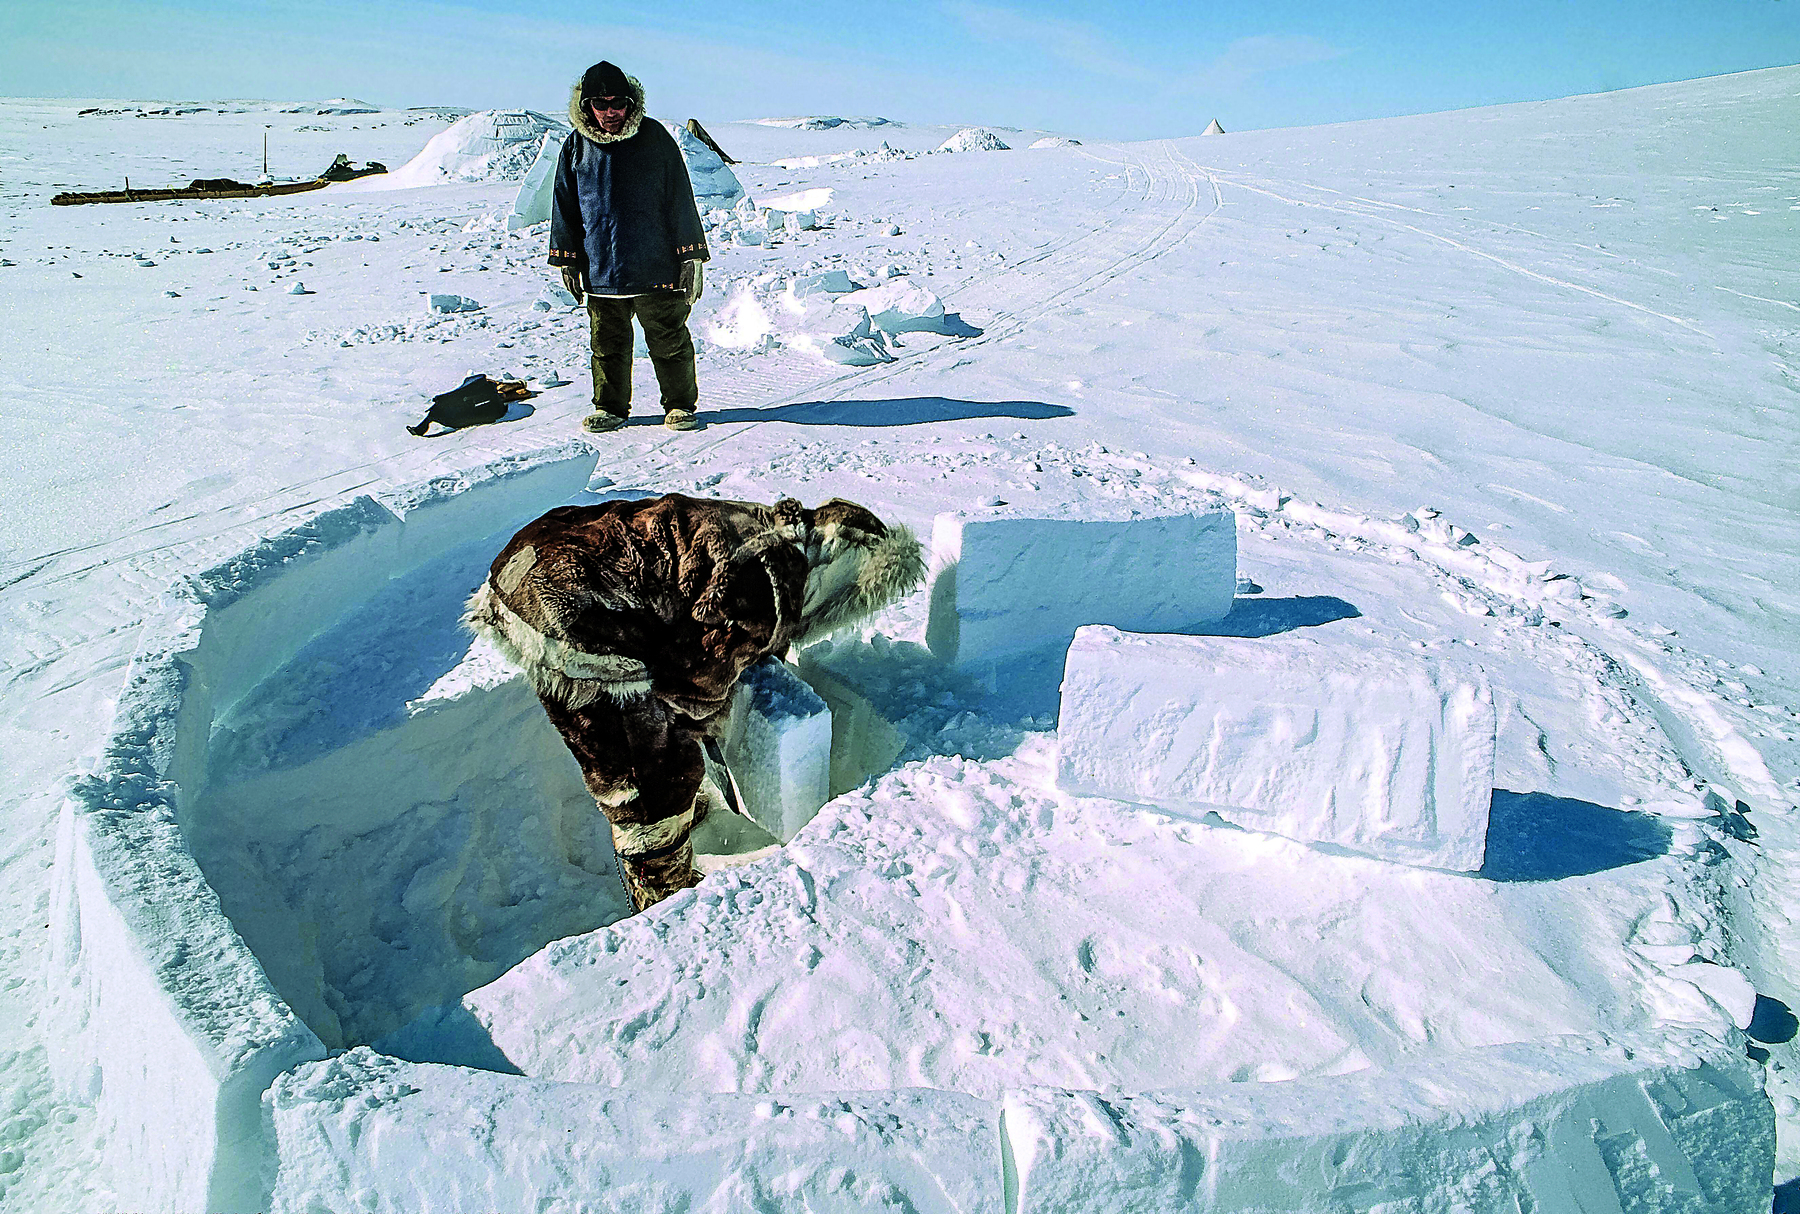 Fotografia. Destaque para dois homens vestindo roupas grossas com pelos nas extremidades e capuzes ao redor da cabeça. Ambos estão em um terreno completamente coberto de neve, próximos a blocos de gelo, organizados em círculo.